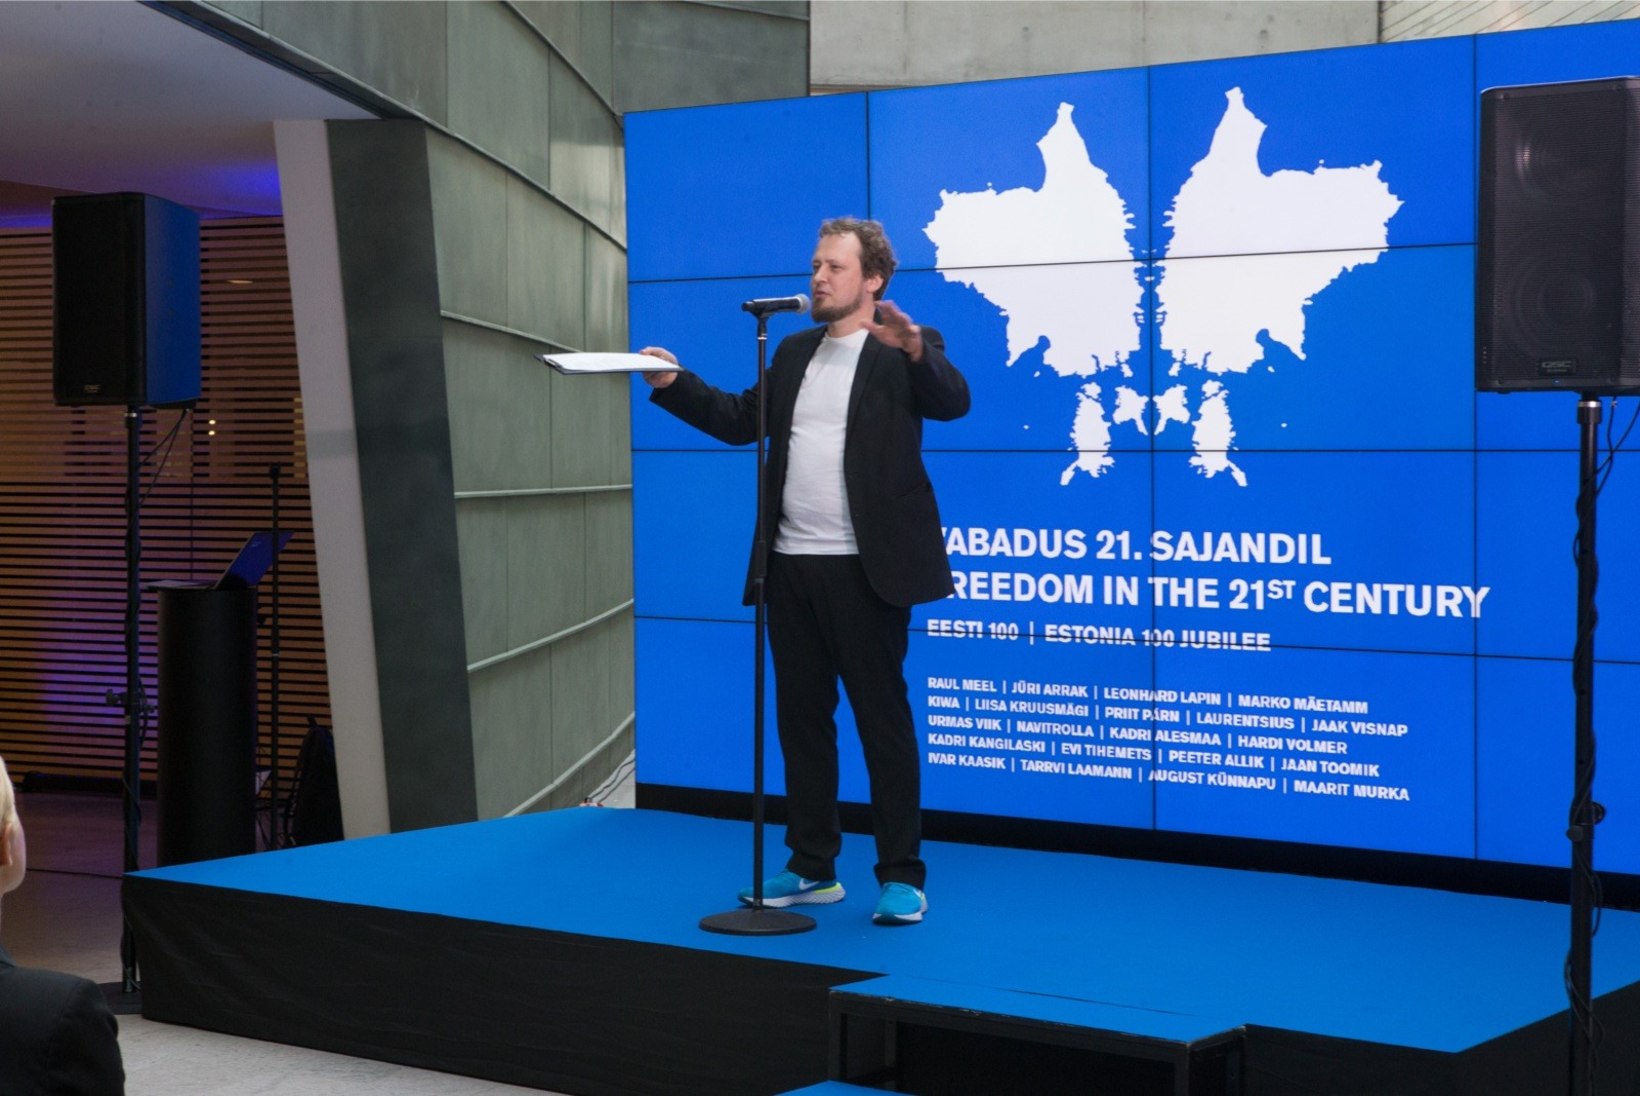 GALERII | Kunstnikud kinkisid Eesti riigile  21 vabadusest inspireeritud teost